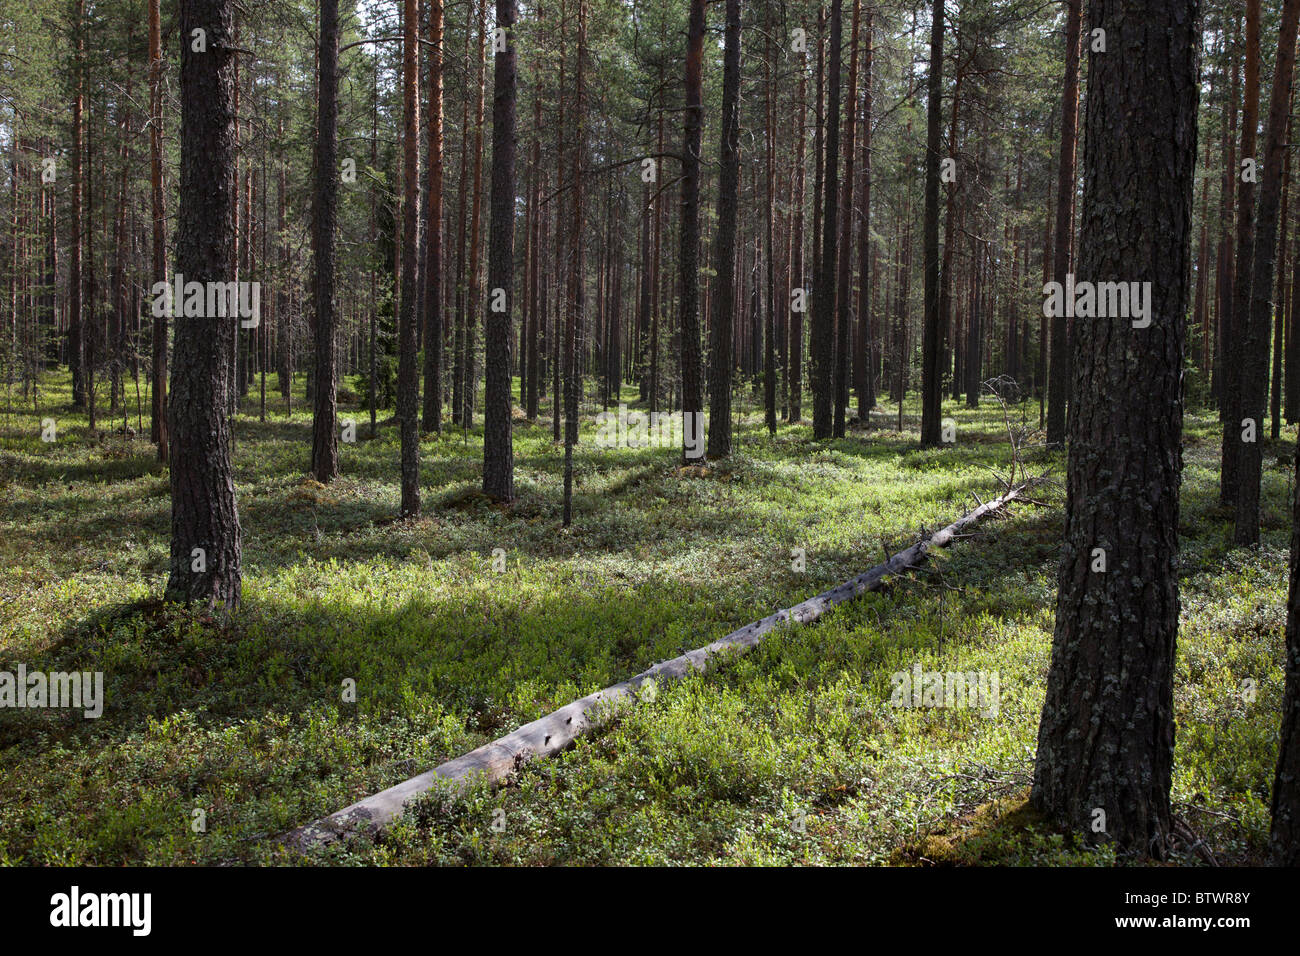 Junge finnische Kiefer ( pinus sylvestris ) Taiga Wald auf trockenem Esker-basierten Boden , Unterholz vor allem von Heidelbeersträuchern , Finnland Stockfoto